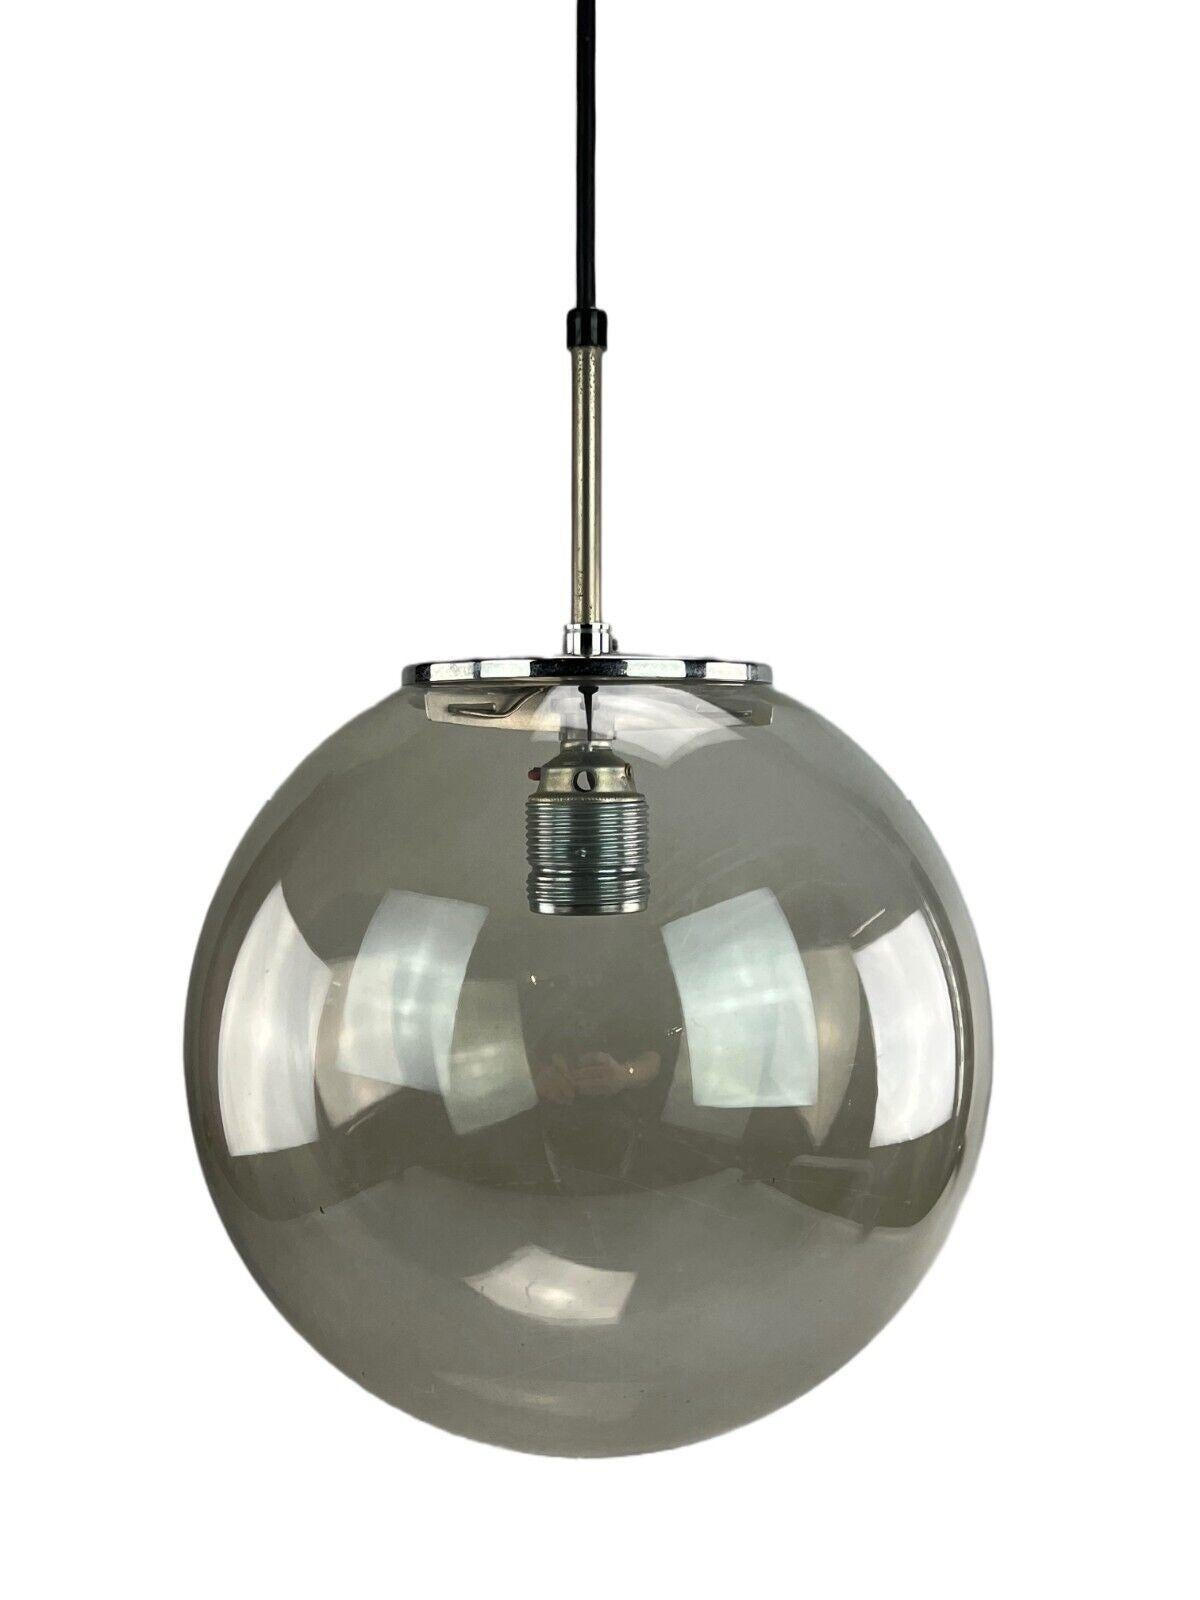 1960s-1970s lamp ceiling lamp Limburg 